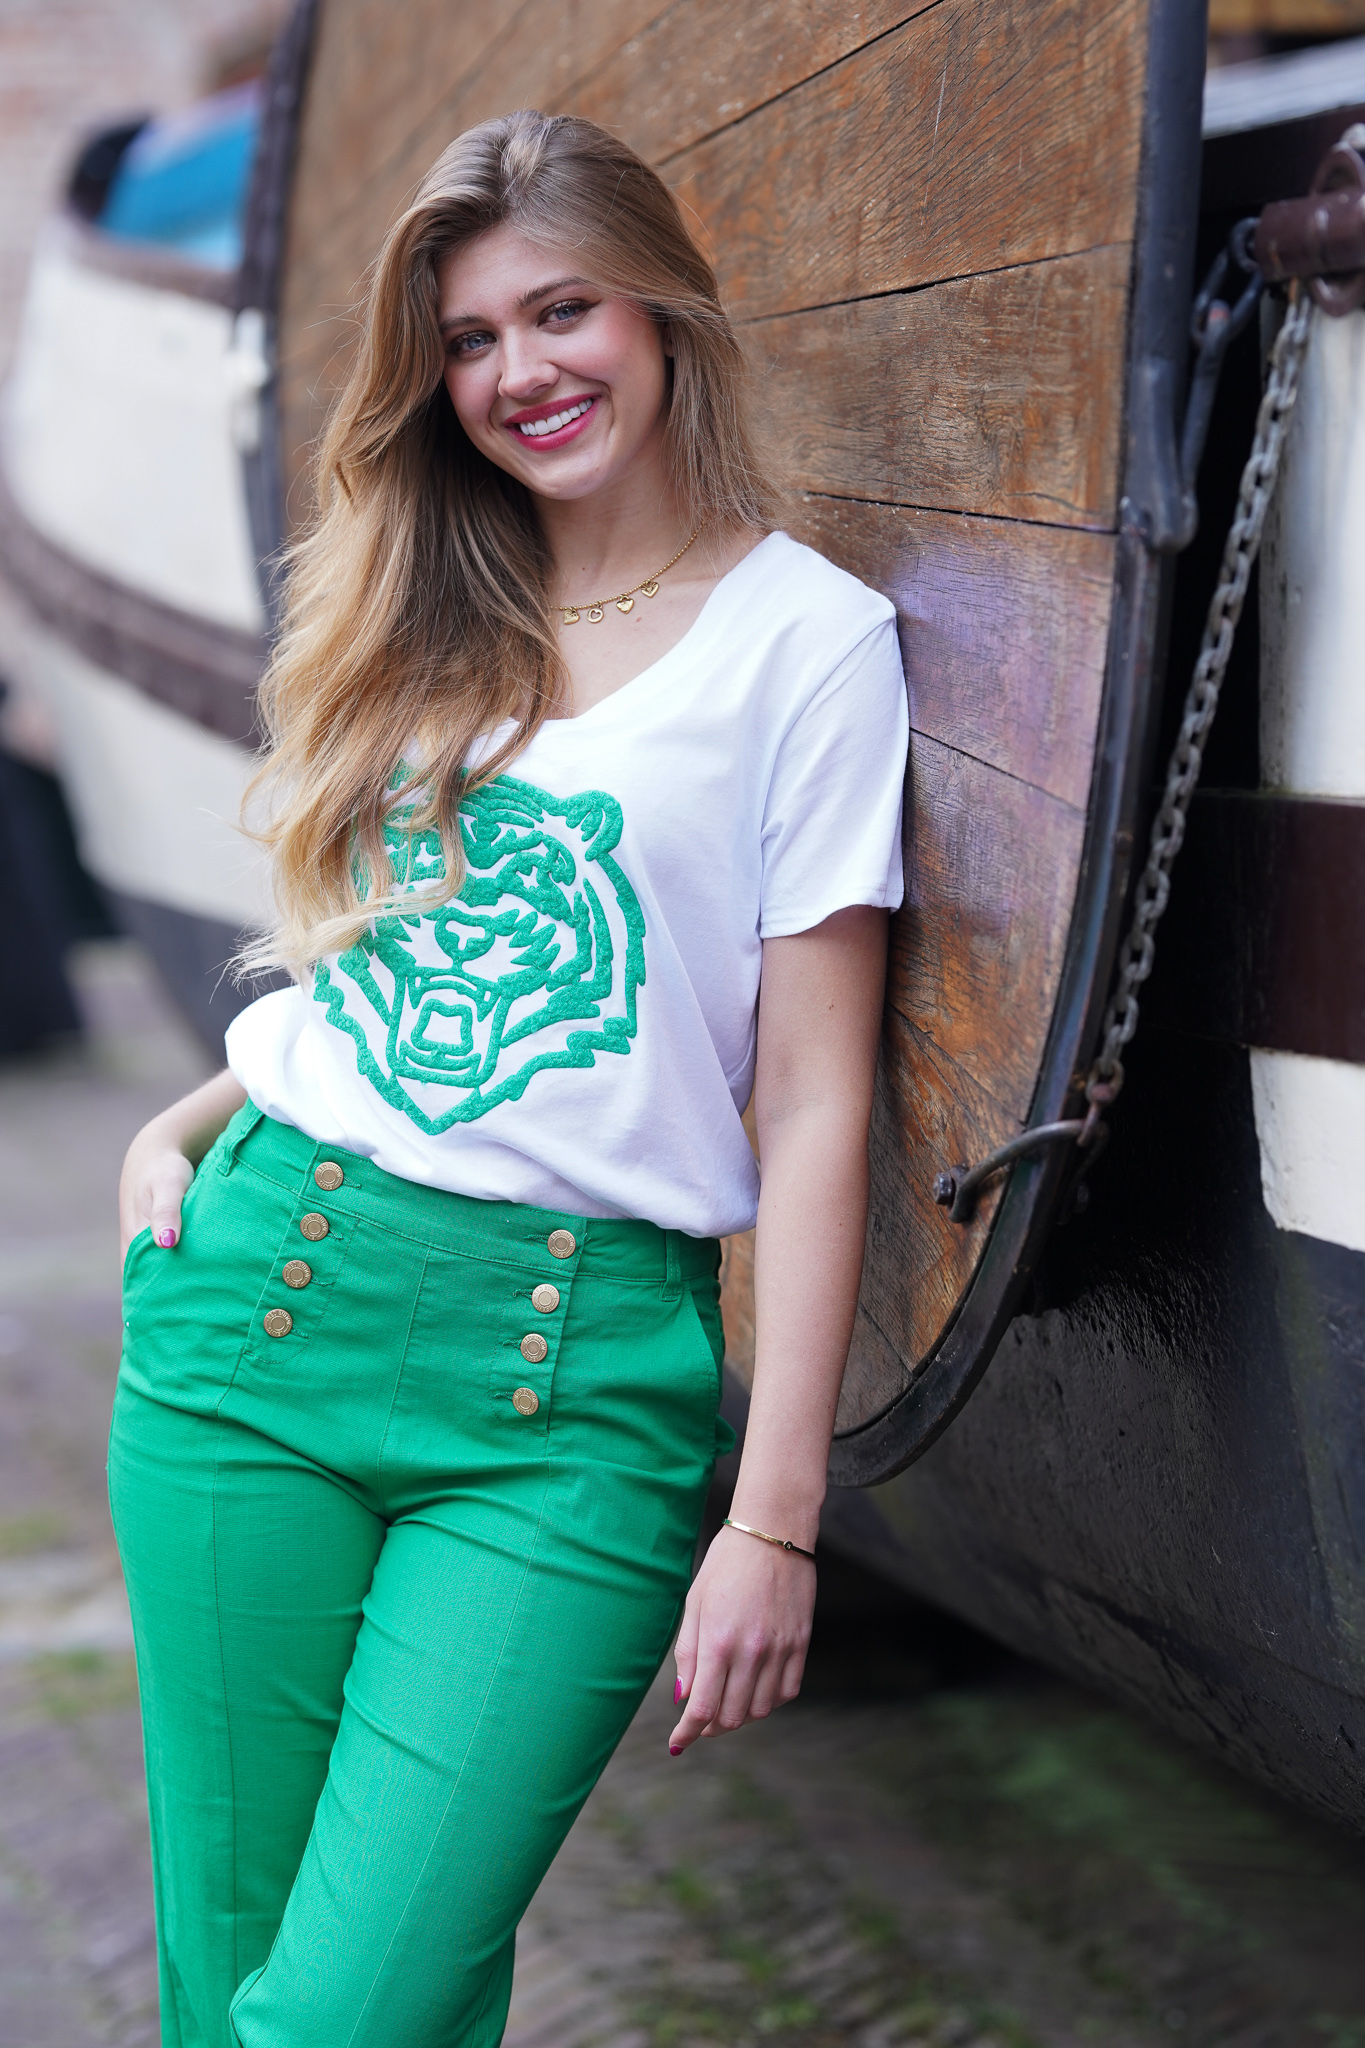 Vernauwd uitspraak Ontwaken V-hals t-shirt met grote flockprint tijger kop - wit/groen - Muts Fashion